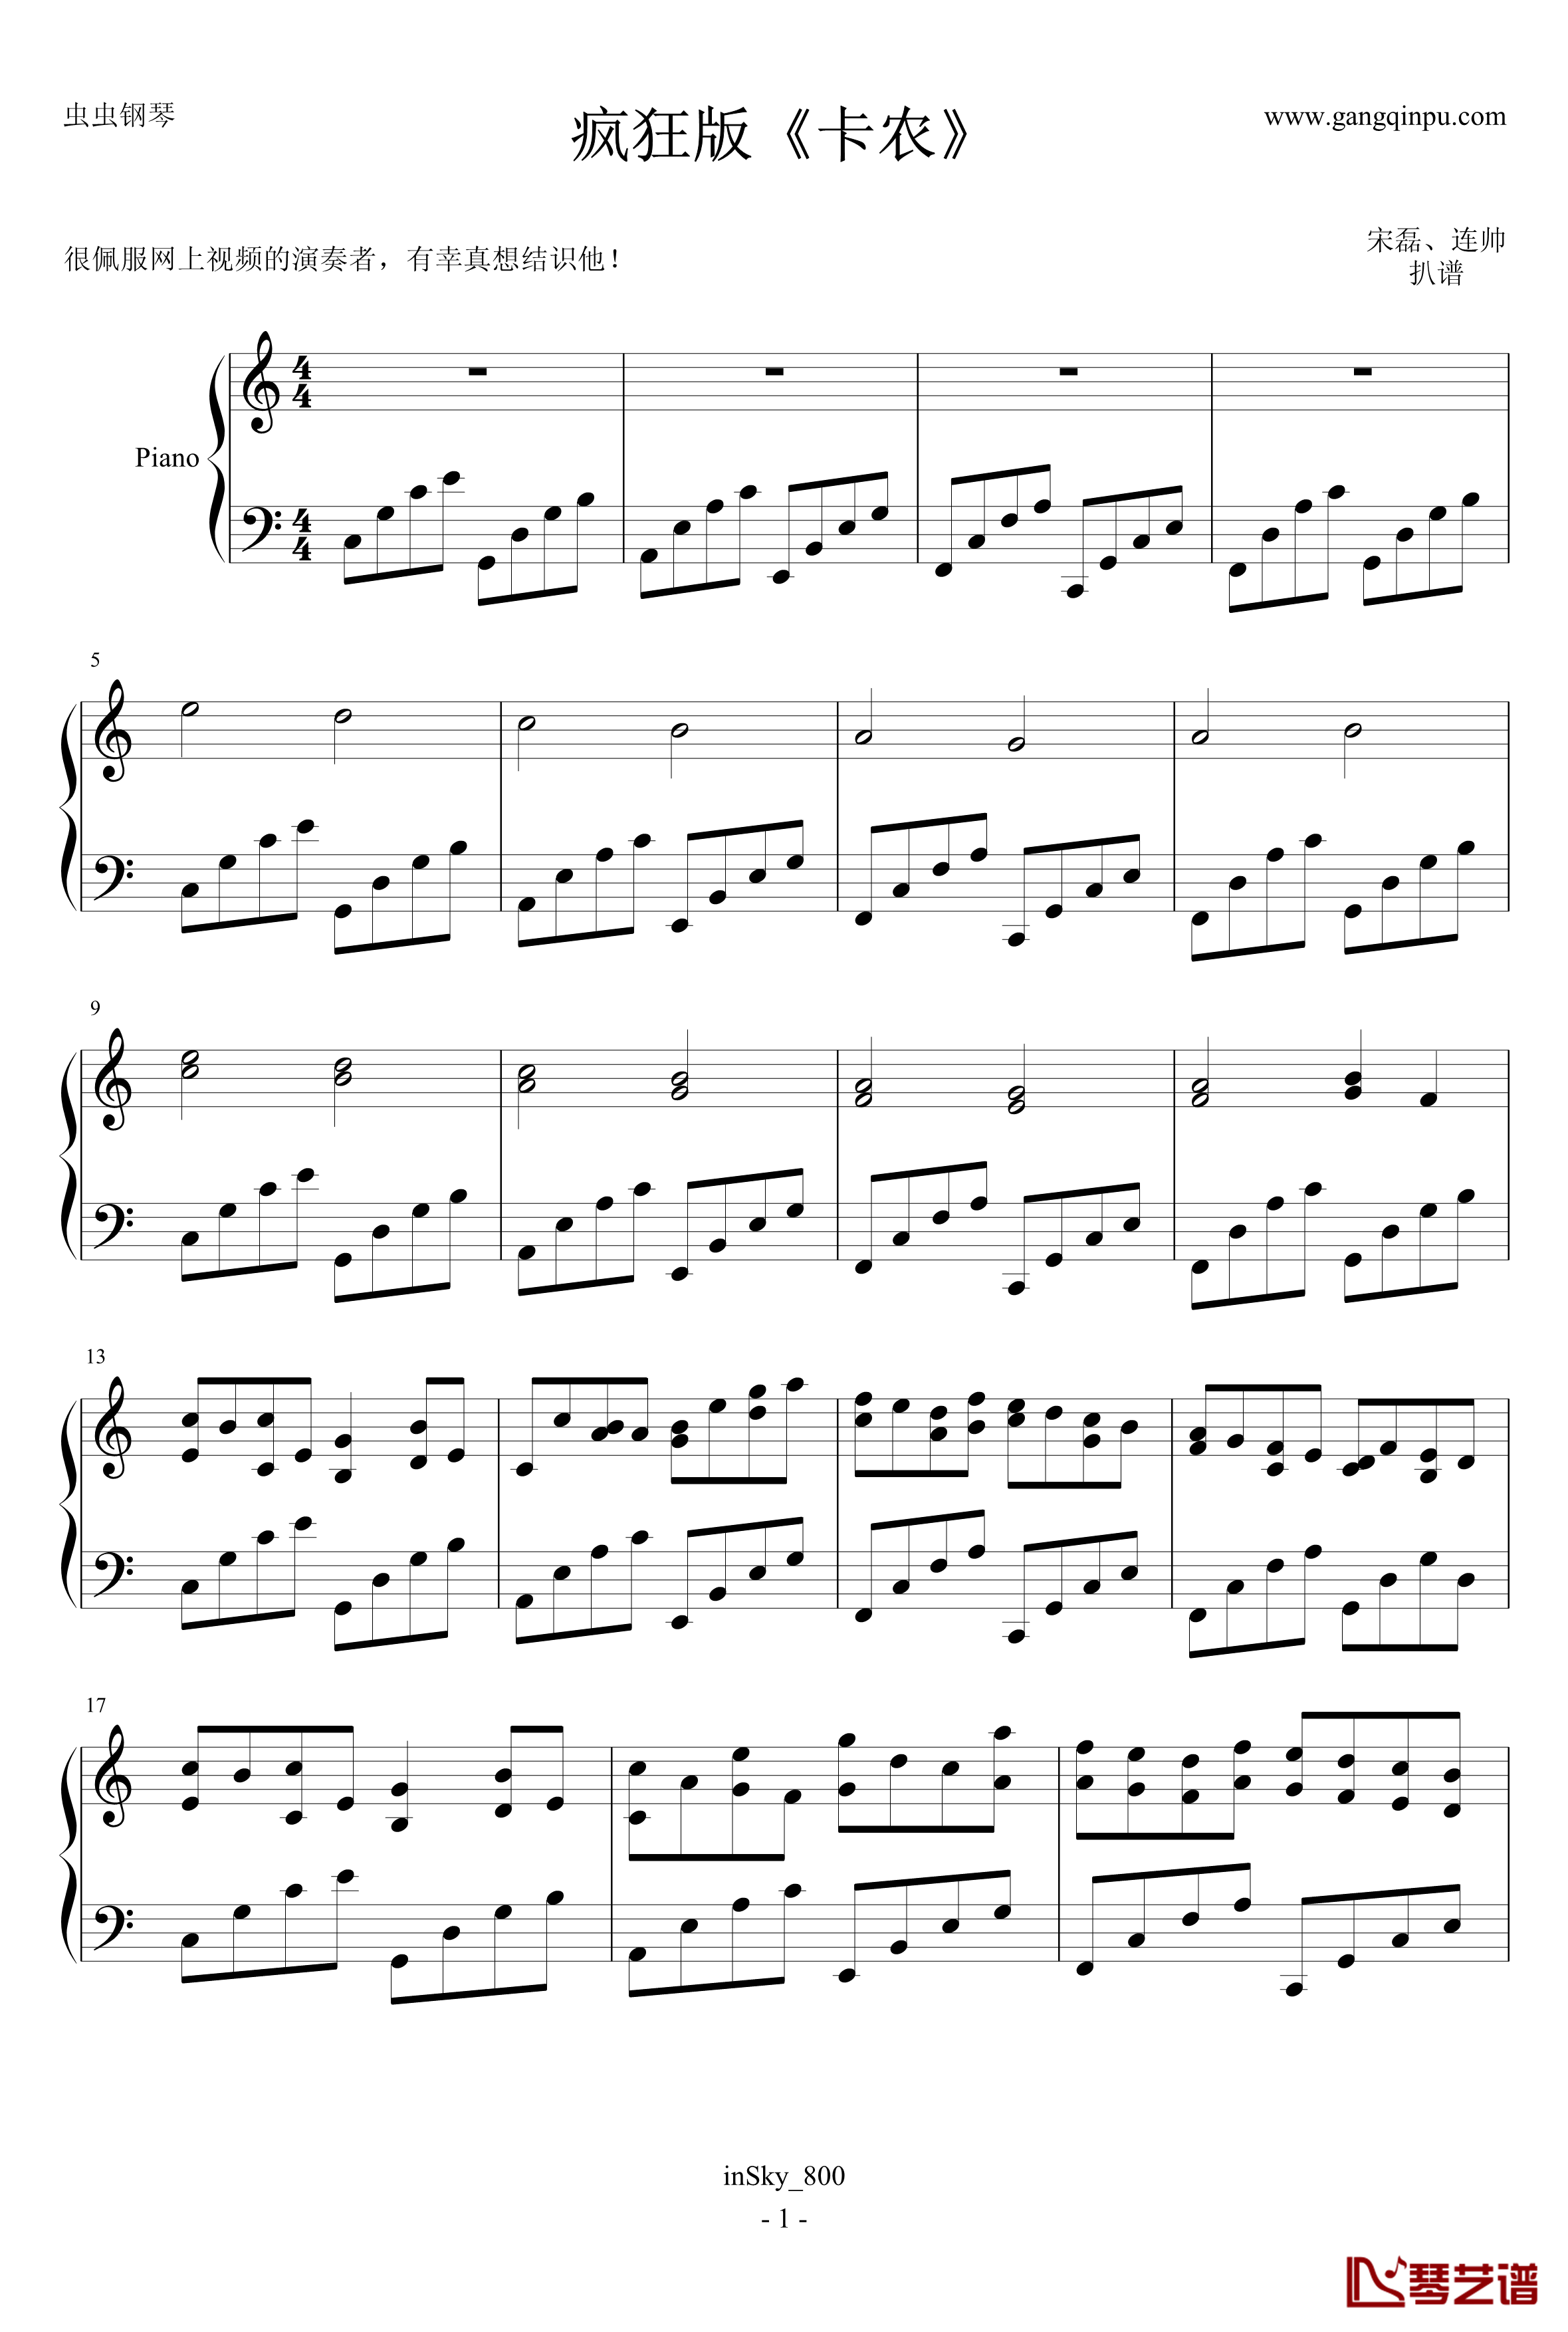 卡农疯狂摇滚版钢琴谱-约翰·巴哈贝尔1